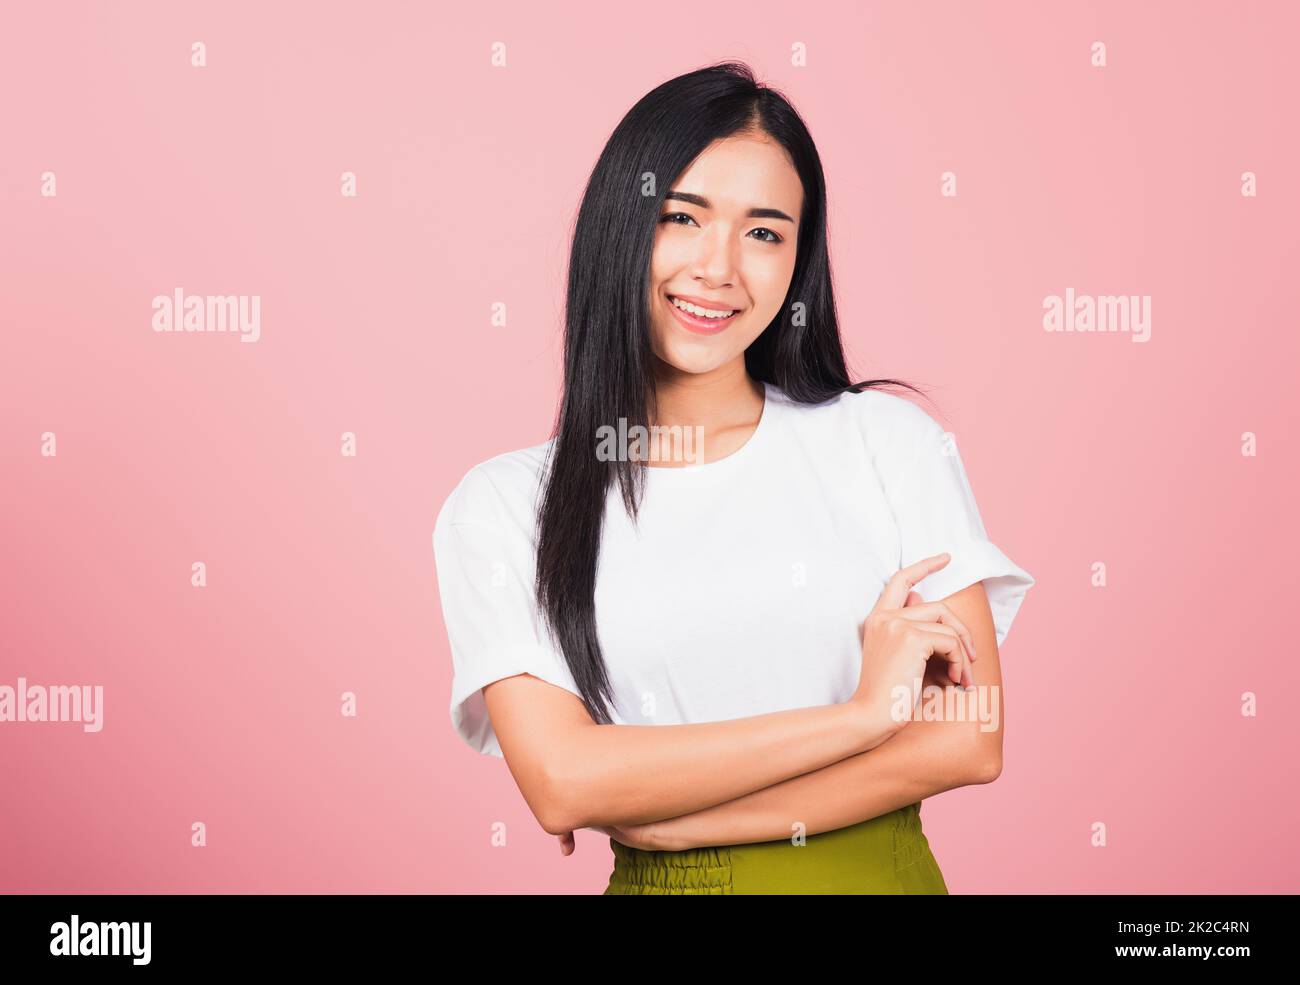 jeune femme debout son sourire confiance avec les bras croisés Banque D'Images